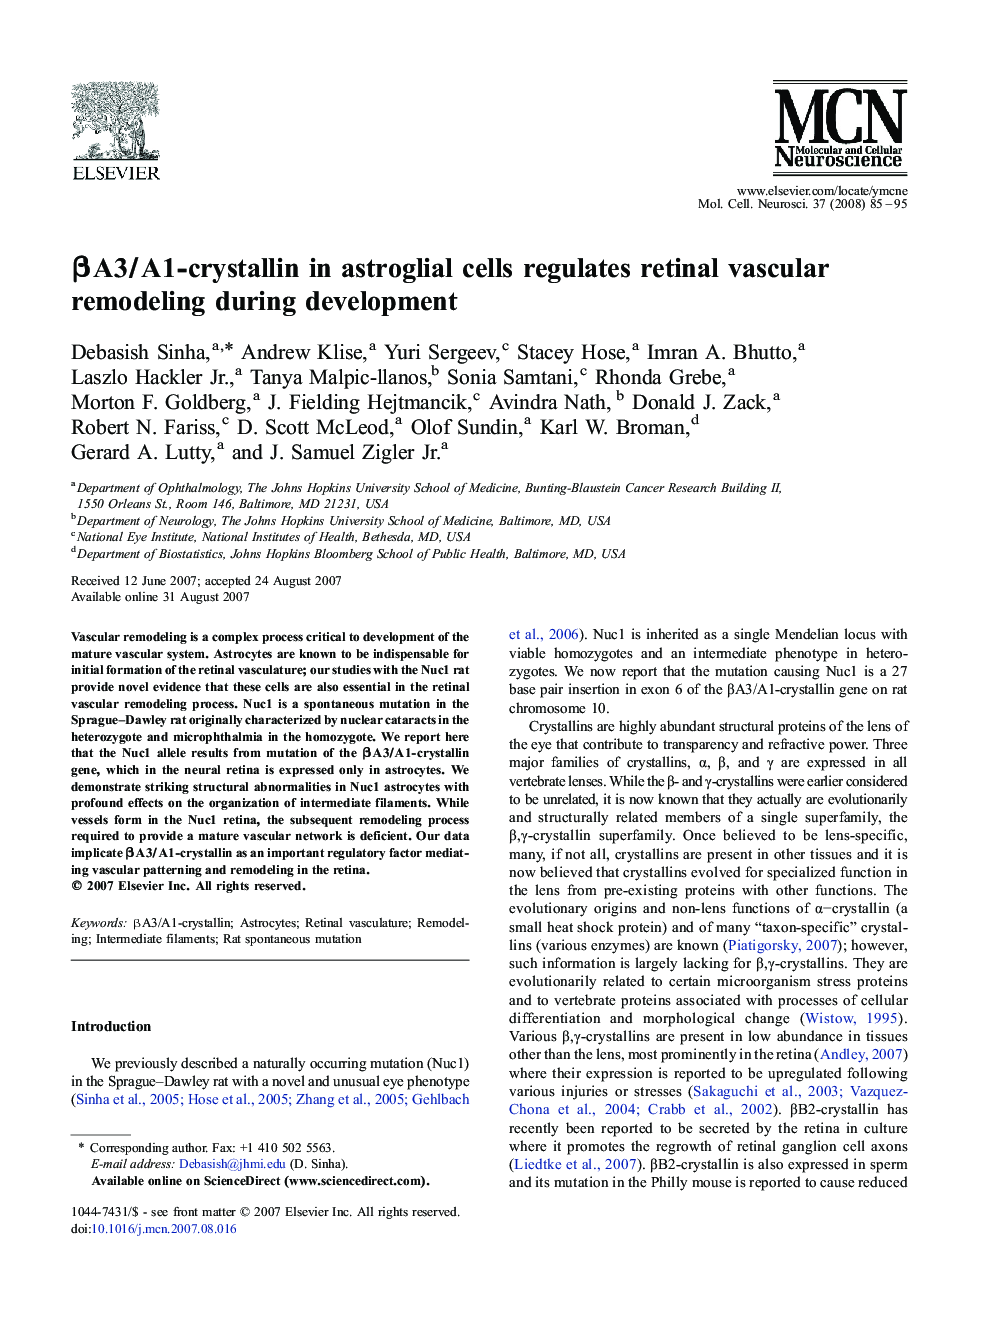 βA3/A1-crystallin in astroglial cells regulates retinal vascular remodeling during development